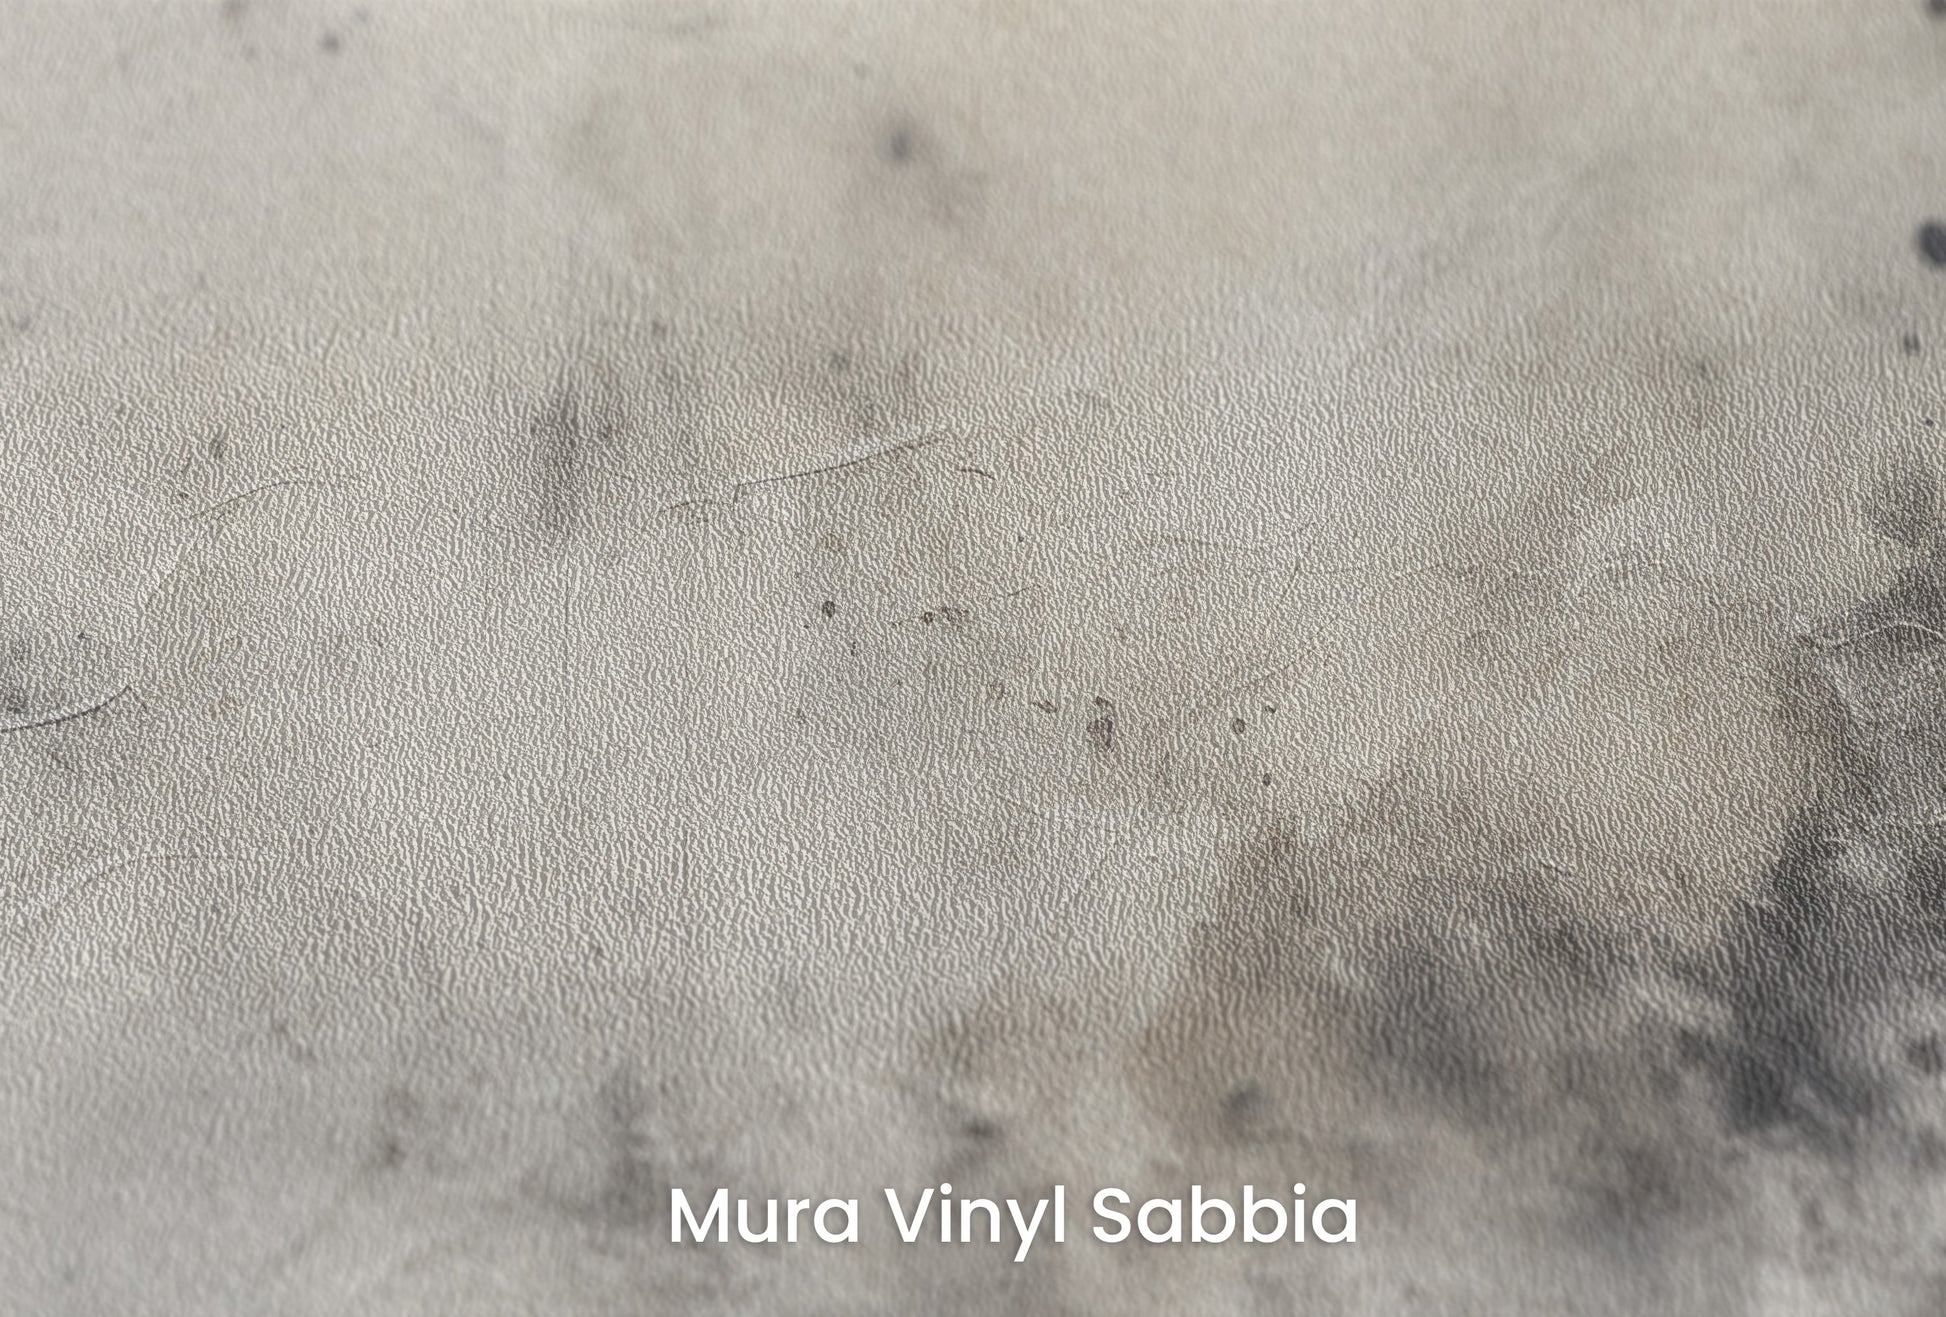 Zbliżenie na artystyczną fototapetę o nazwie COSMIC SMOKE AND MIRRORS na podłożu Mura Vinyl Sabbia struktura grubego ziarna piasku.